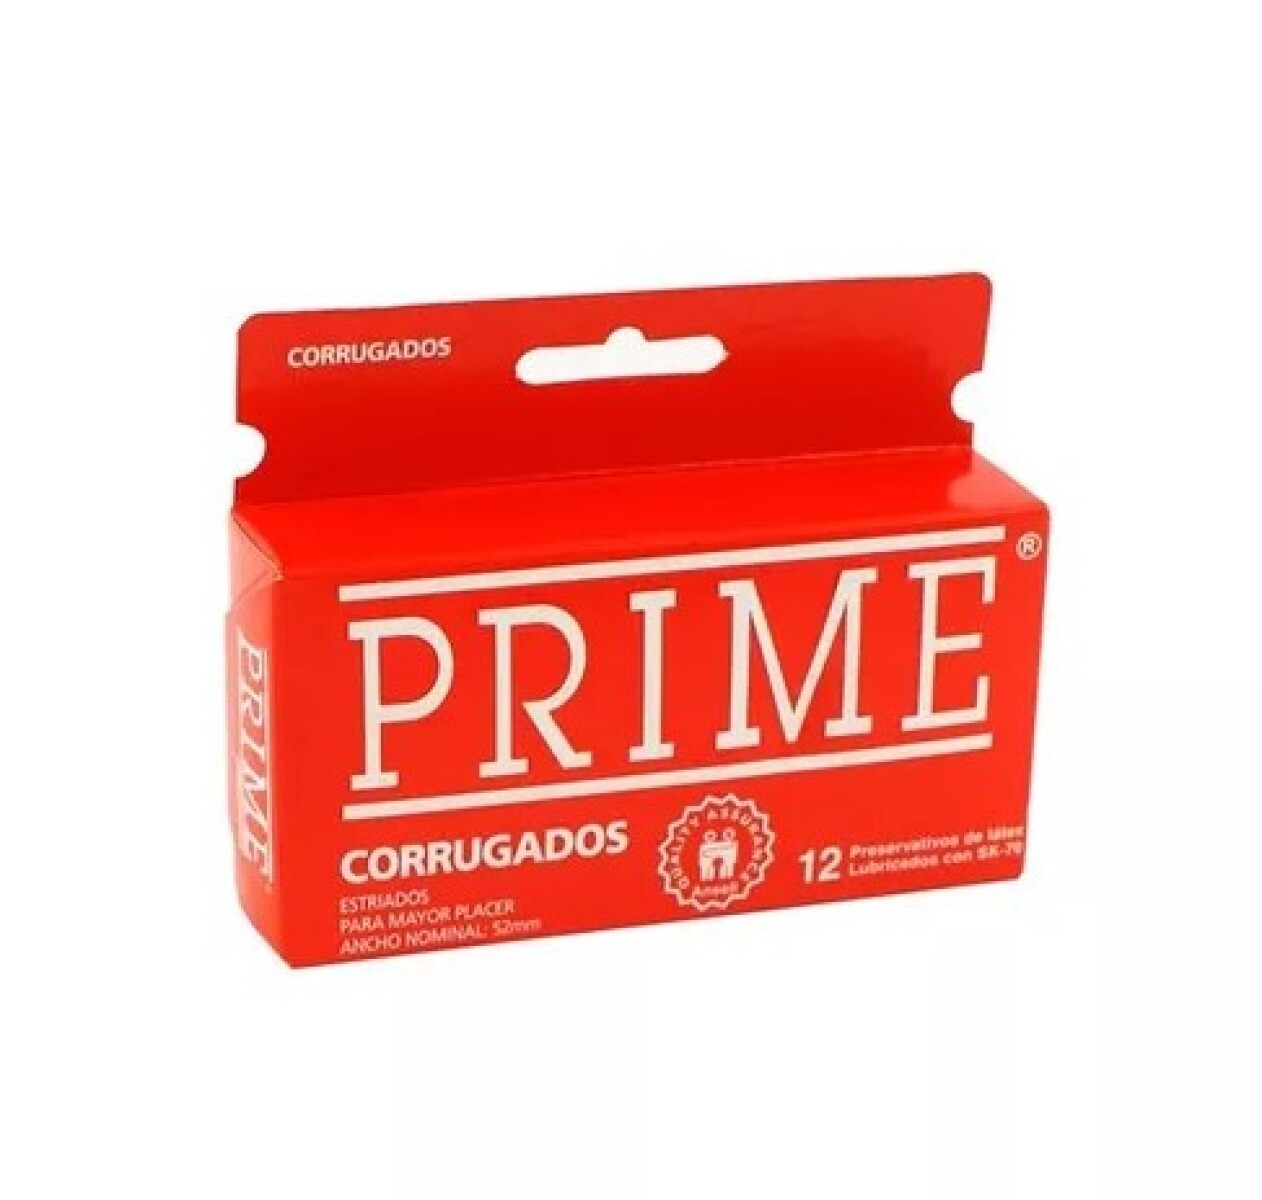 Preservativos Prime x12 - Corrugados 